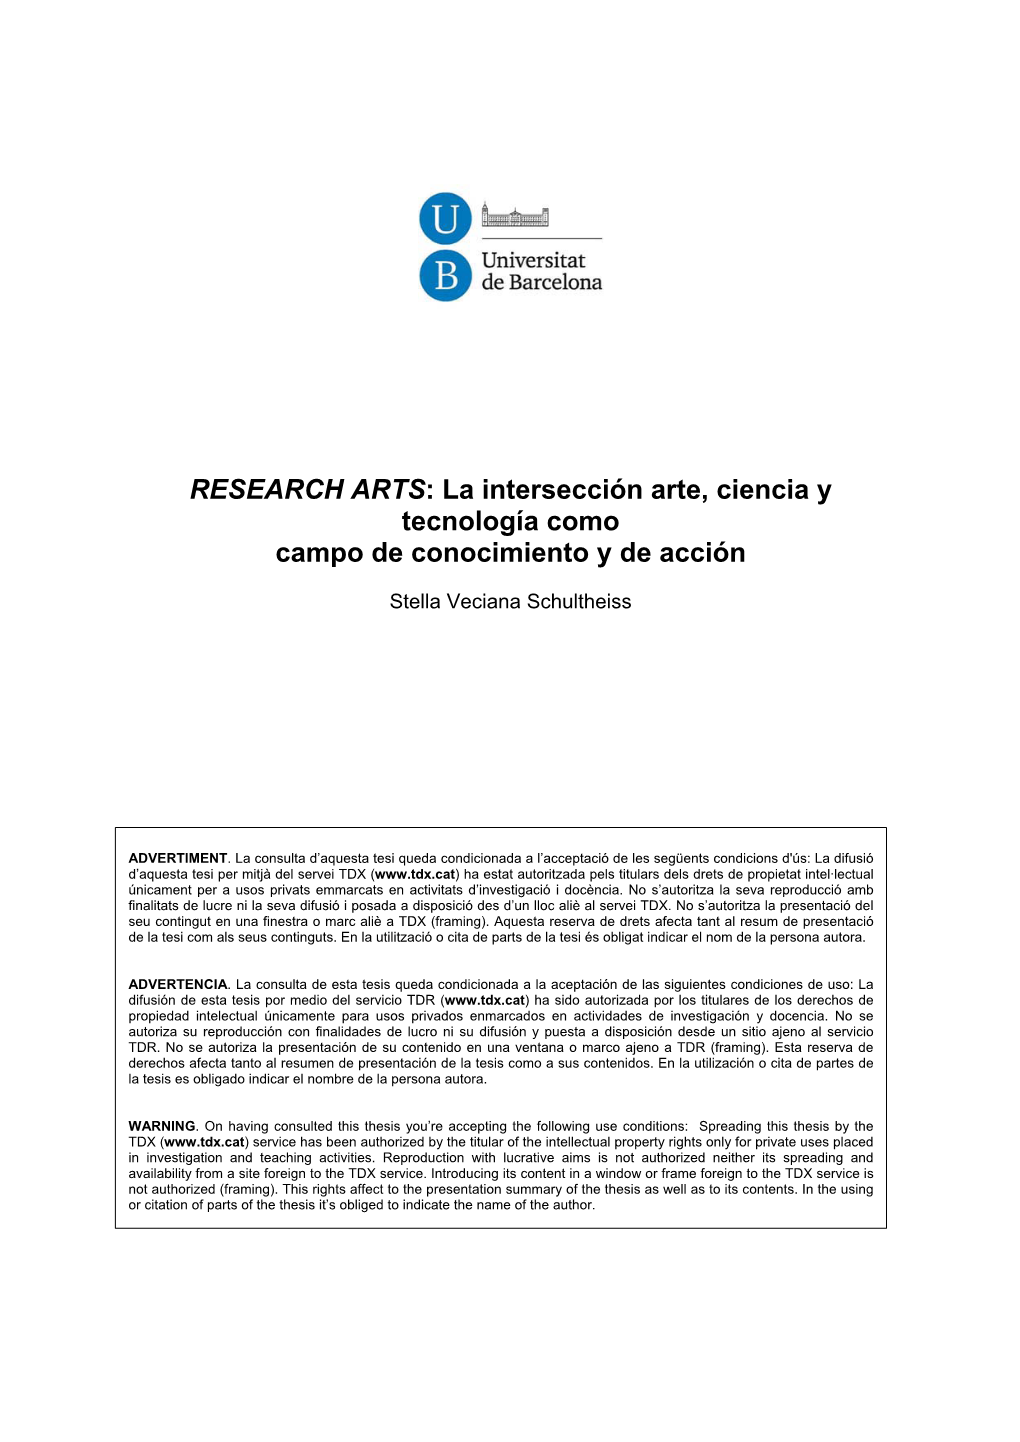 RESEARCH ARTS: La Intersección Arte, Ciencia Y Tecnología Como Campo De Conocimiento Y De Acción